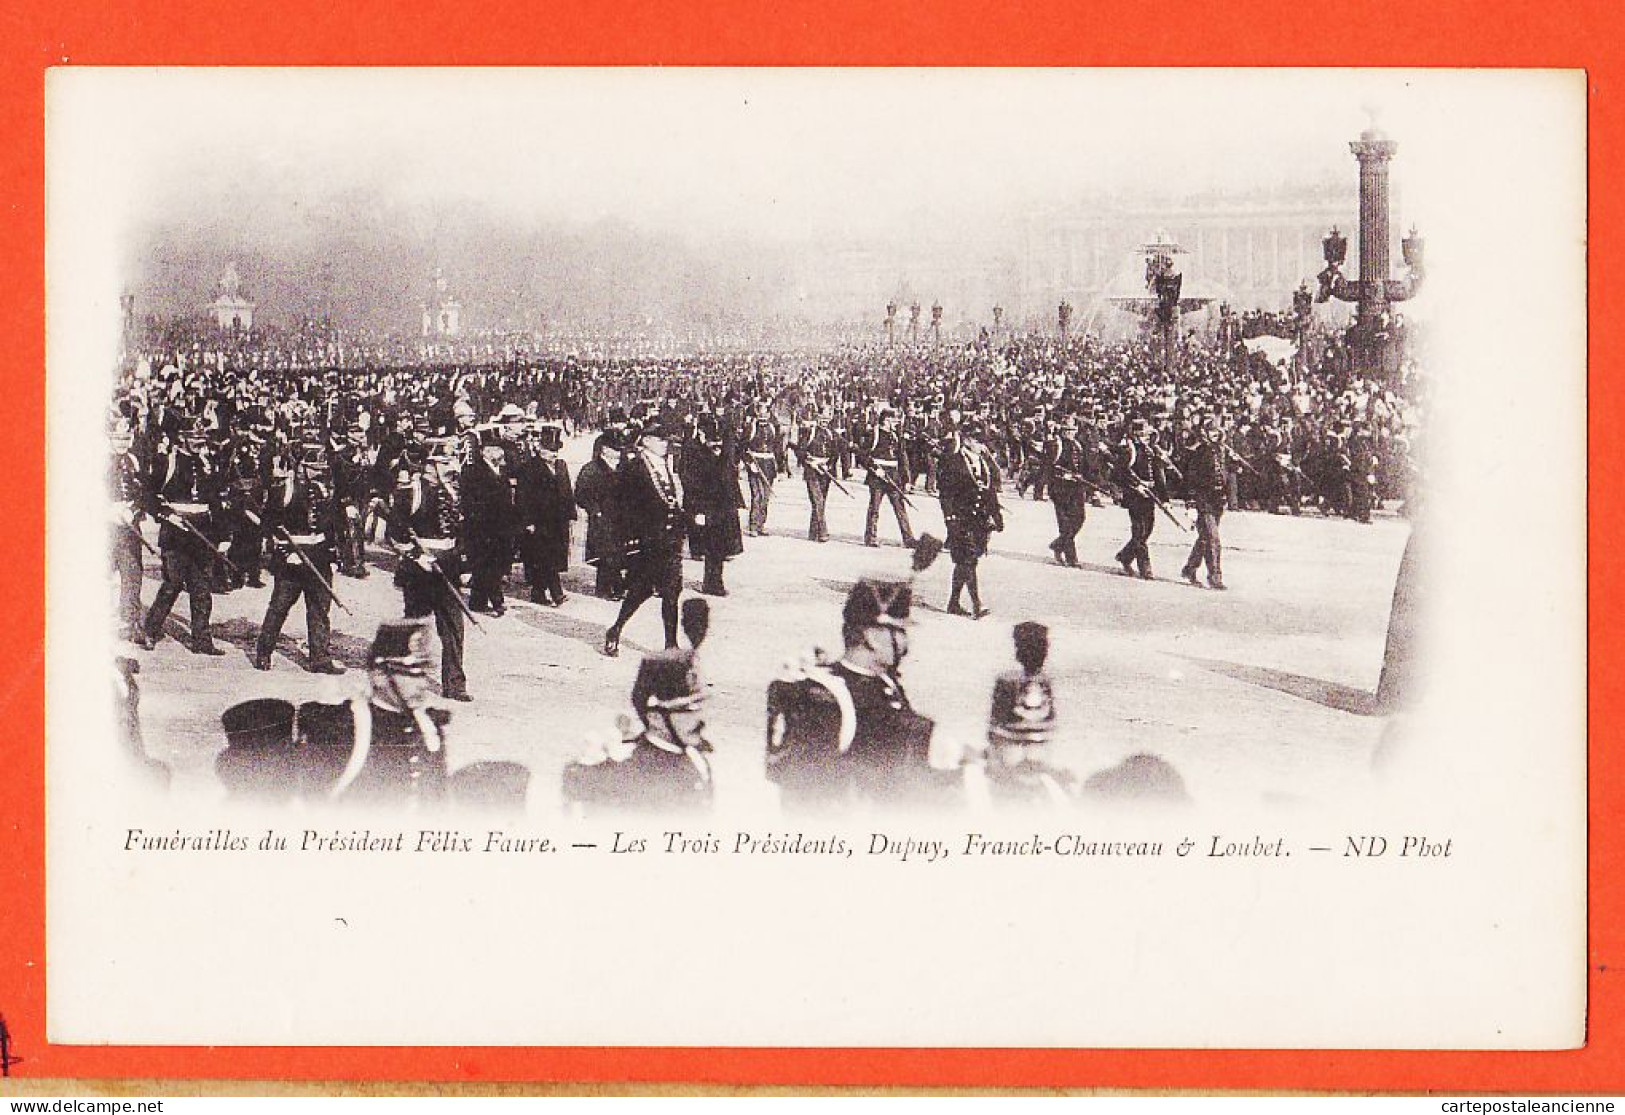 29106 / ⭐ Peu Commun PARIS 23 FEVRIER 1899 Funerailles Président FELIX FAURE 3 Présidents DUPUY FRANCK-CHAUVEAU LOUBET  - Funerali